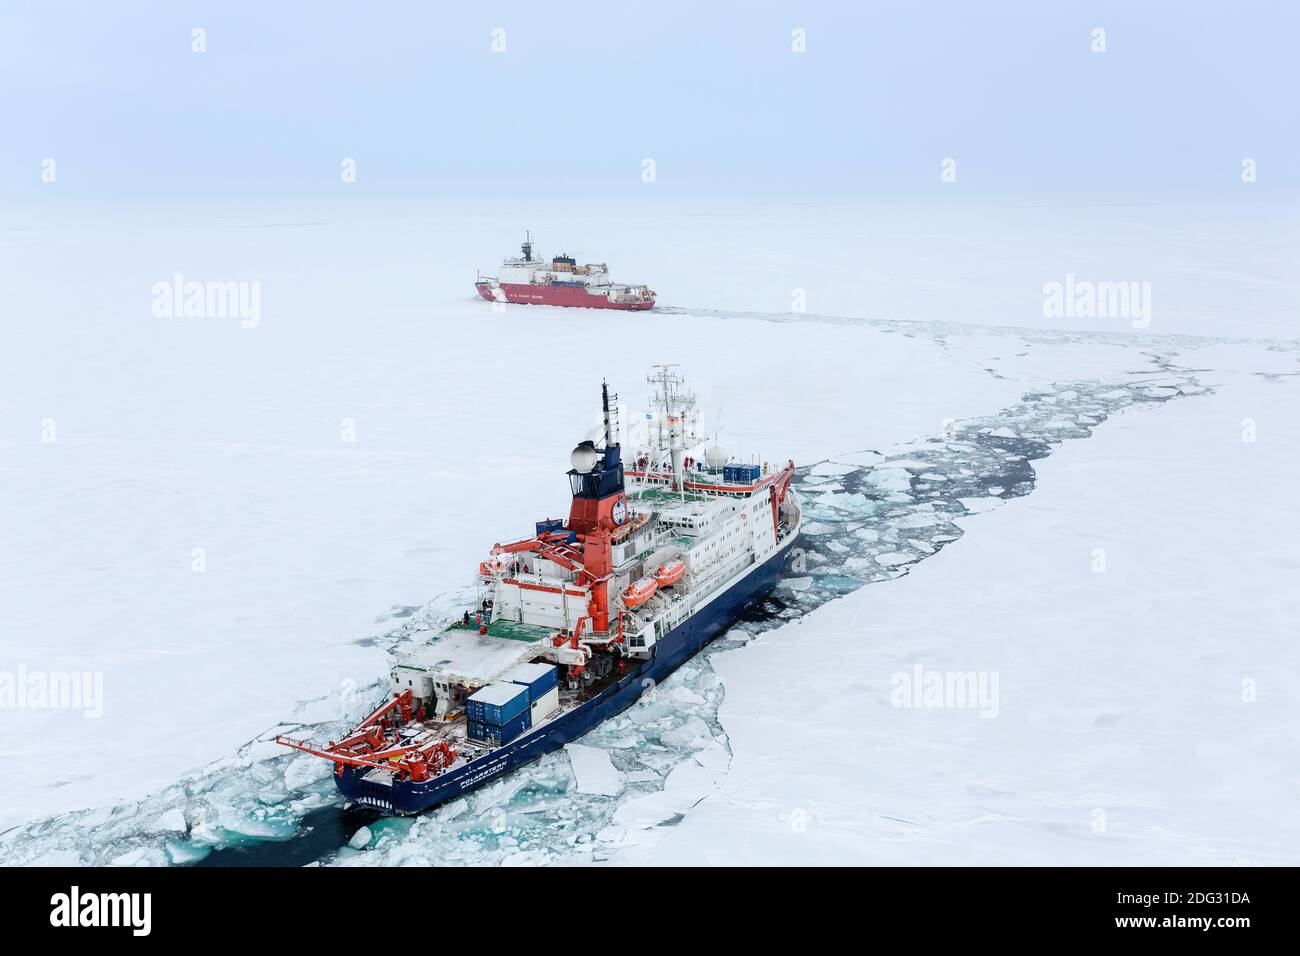 Brise-glace Polarstern et Cutter Healy au pôle Nord le brise-glace de  recherche allemand Polarstern (premier plan) et le Cutter de la Garde  côtière américaine Healy se sont réunis au pôle Nord en